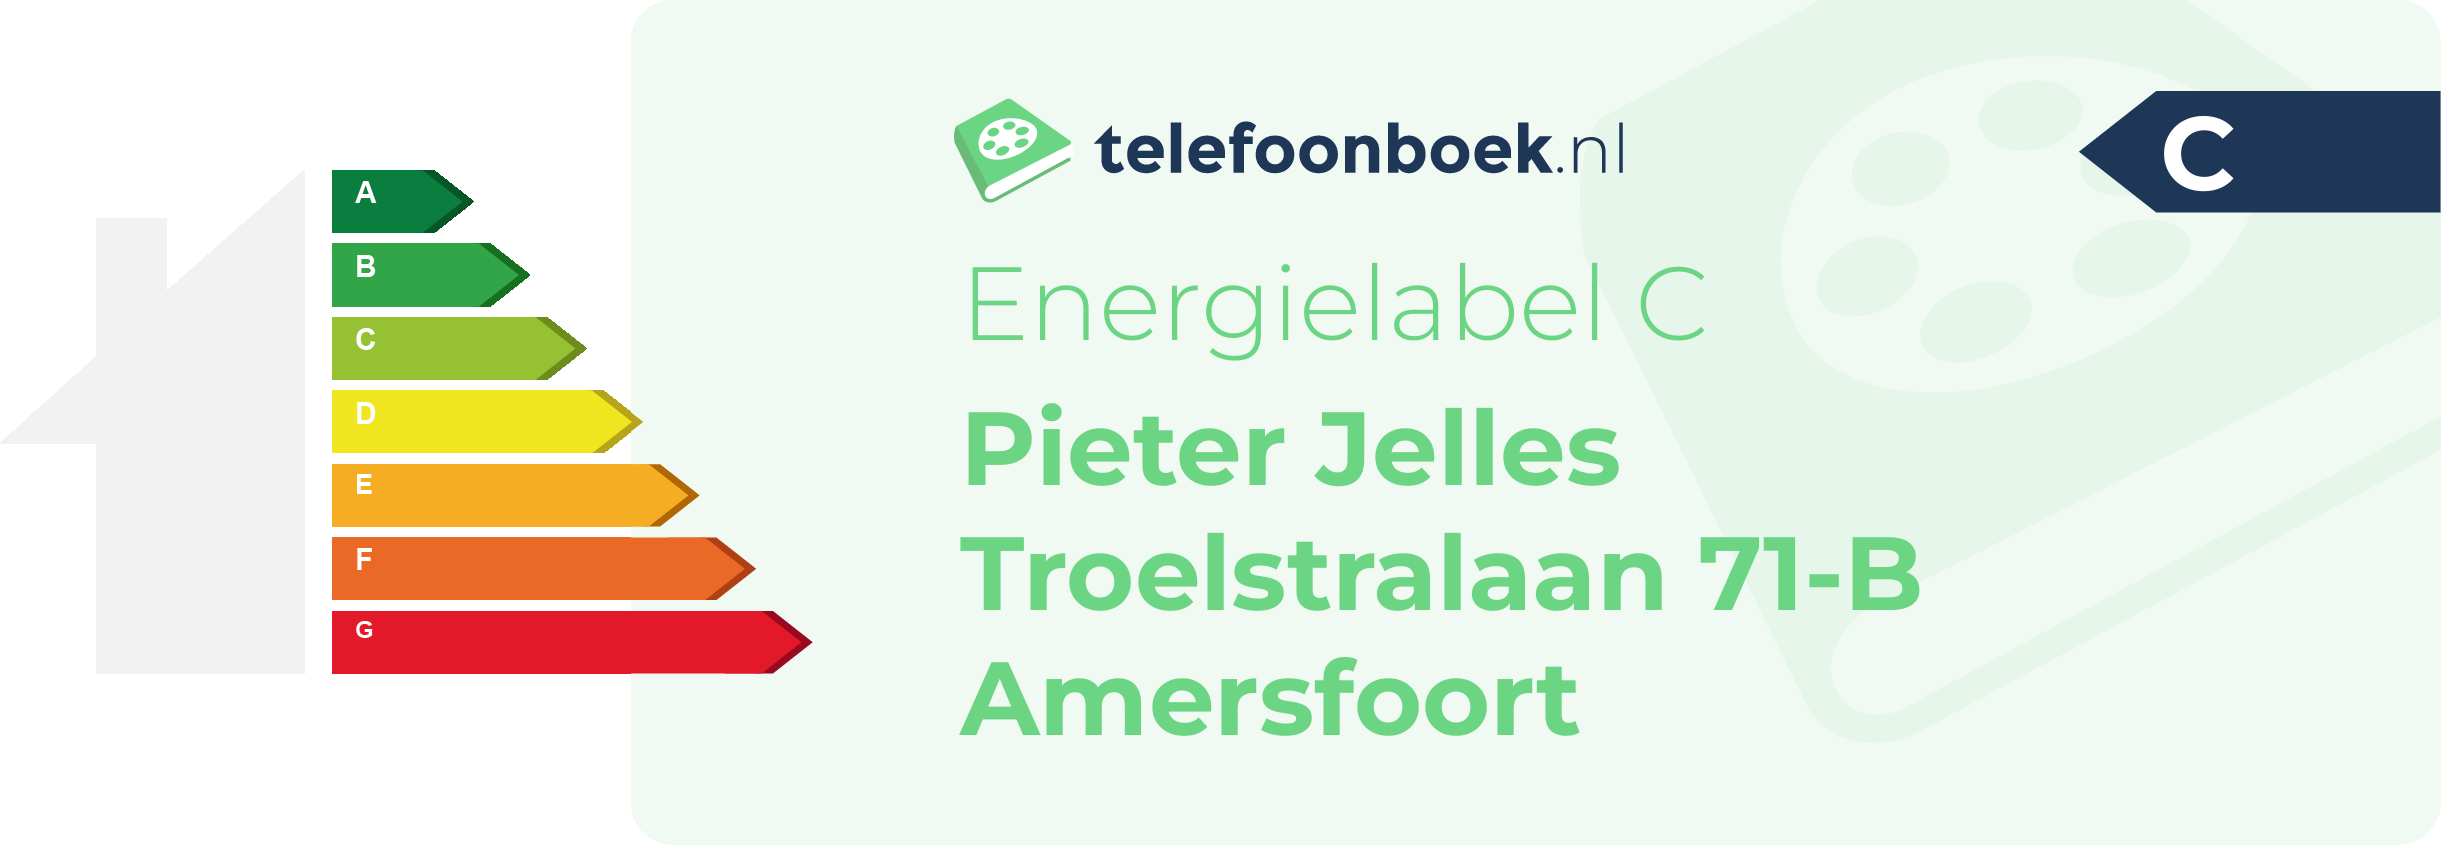 Energielabel Pieter Jelles Troelstralaan 71-B Amersfoort